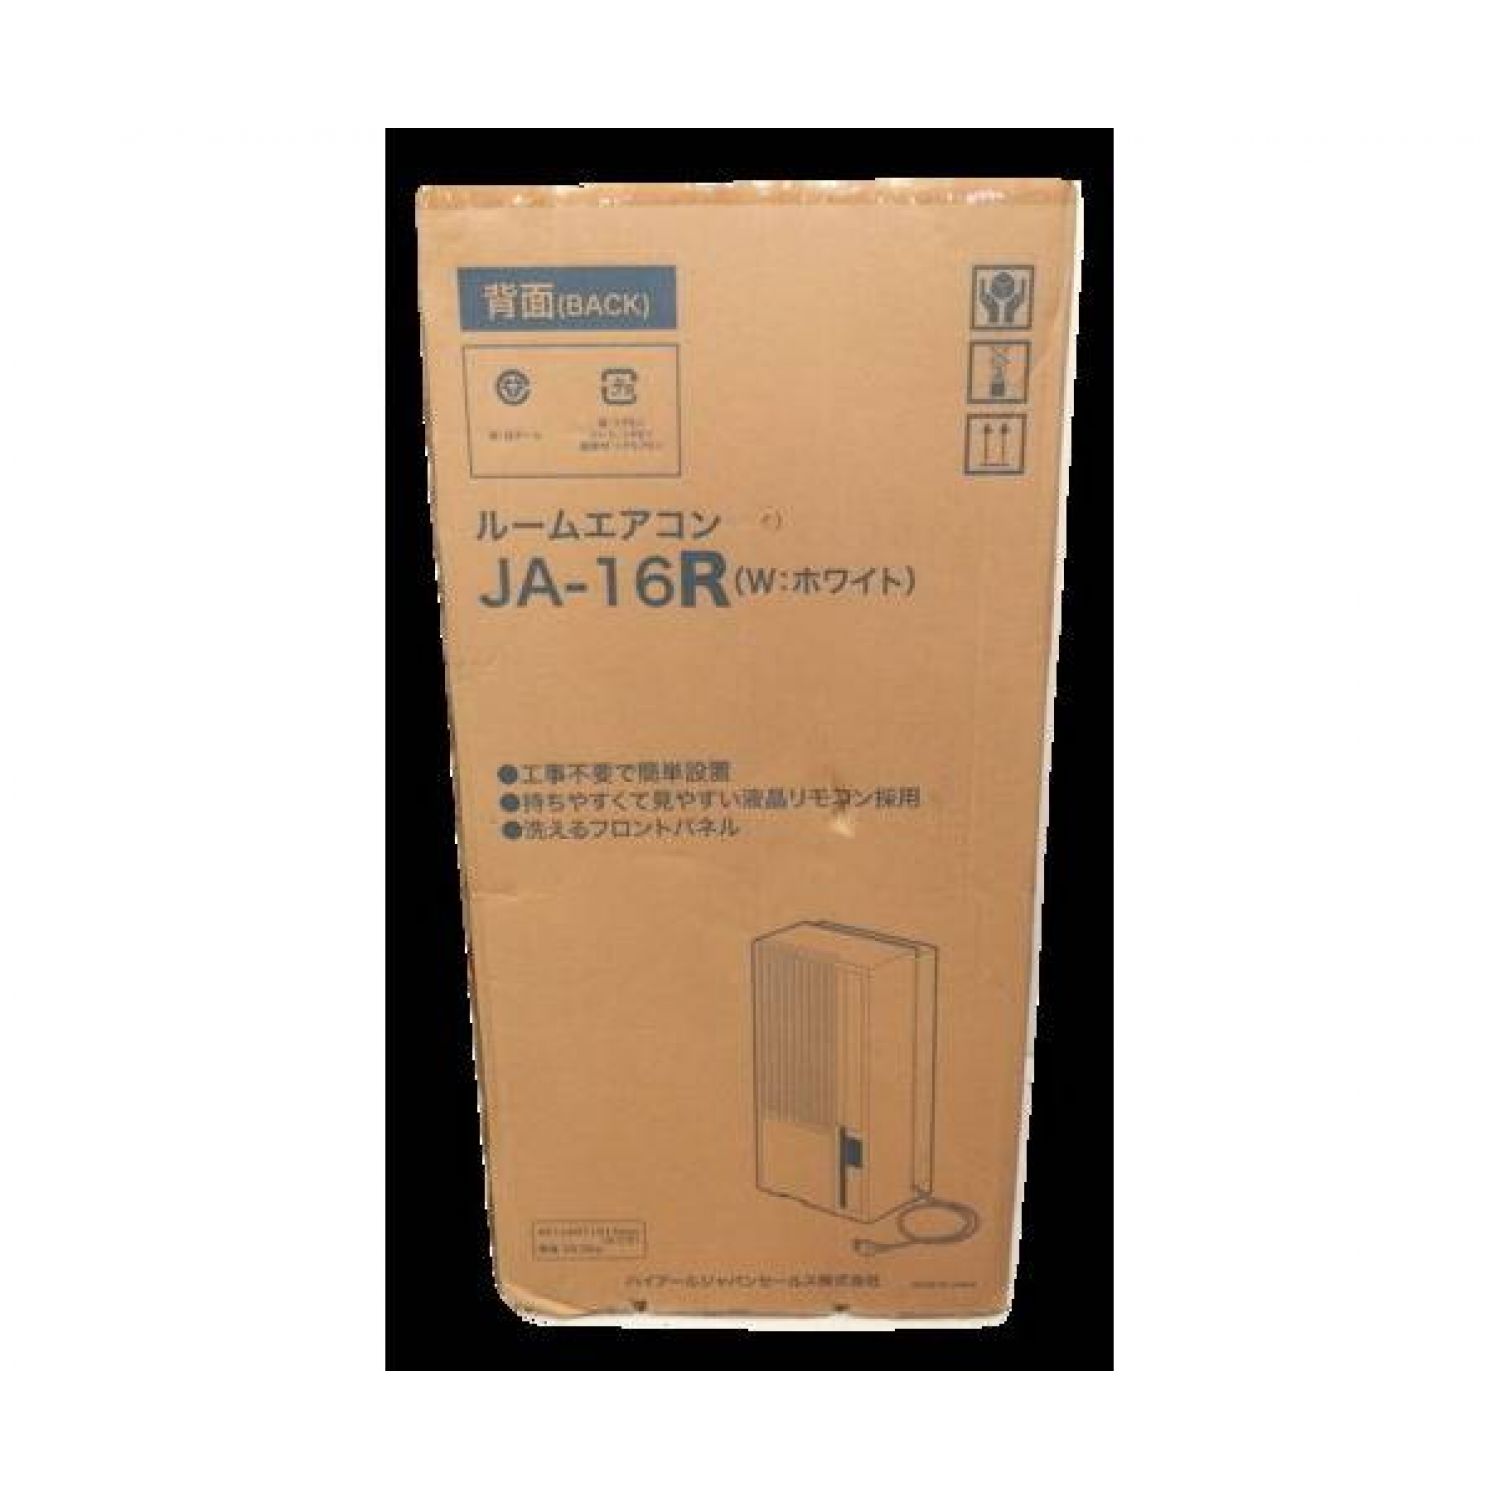 Haier 窓枠エアコン 未使用品 JA-16R 2017年製 1.6kW 木造4畳-鉄筋6畳 程度S(未使用品)